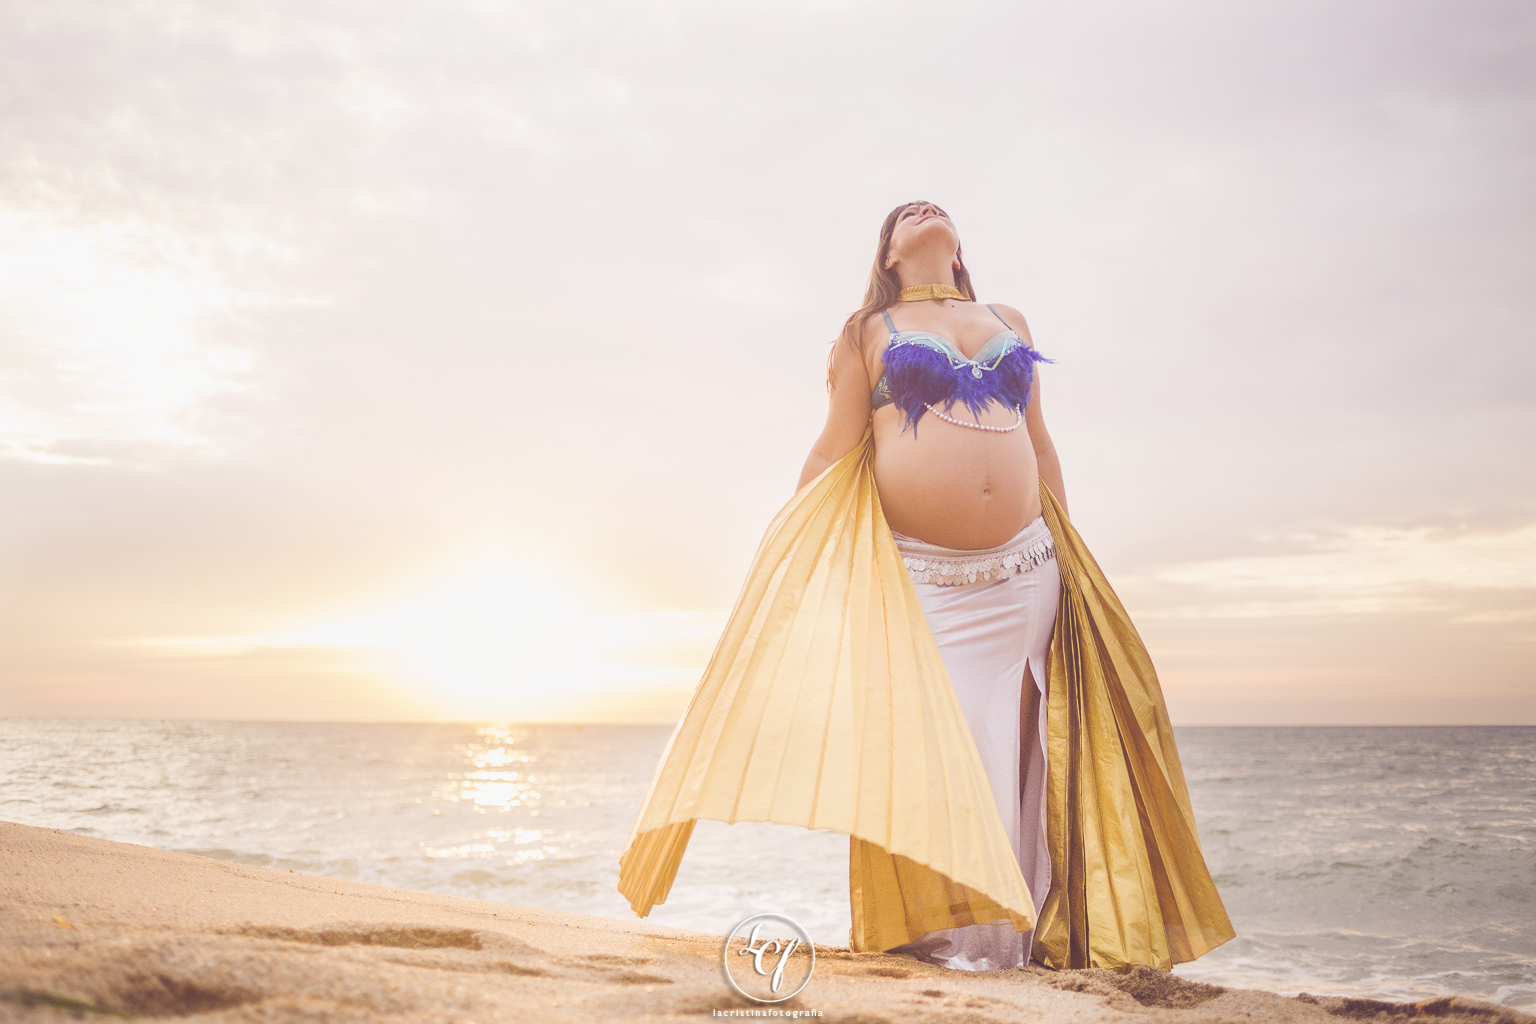 fotógrafo embarazo :: fotógrafo embarazadas :: fotografía embarazada playa :: Vilassar de mar :: fotógrafo embarazo danza del vientre